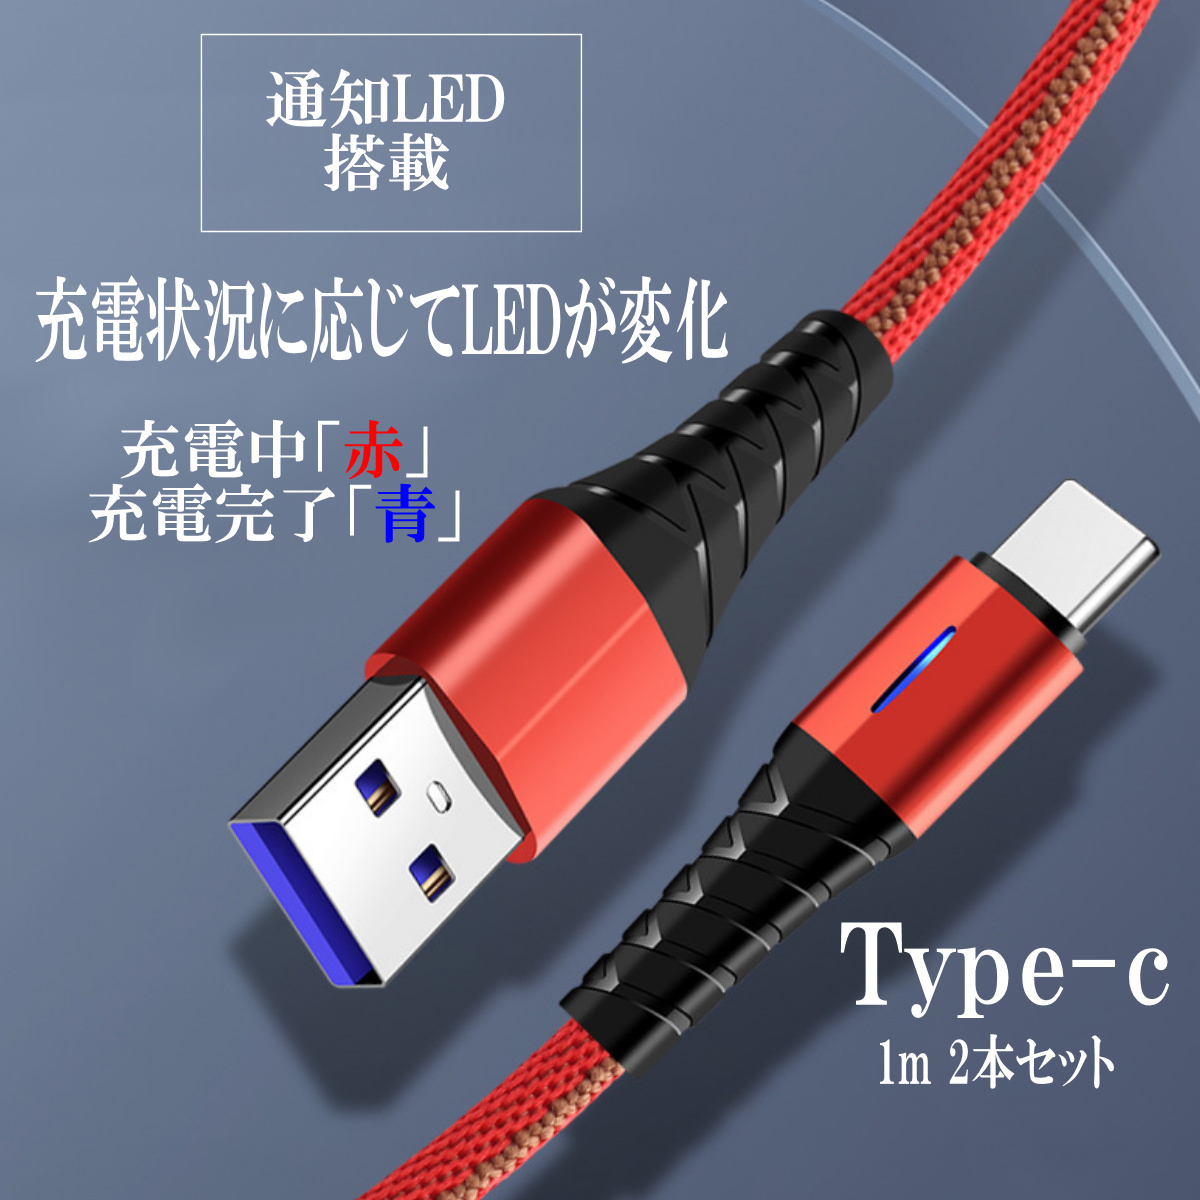 充電が見える Type-c 光る 充電ケーブル Typec タイプc USB 充電